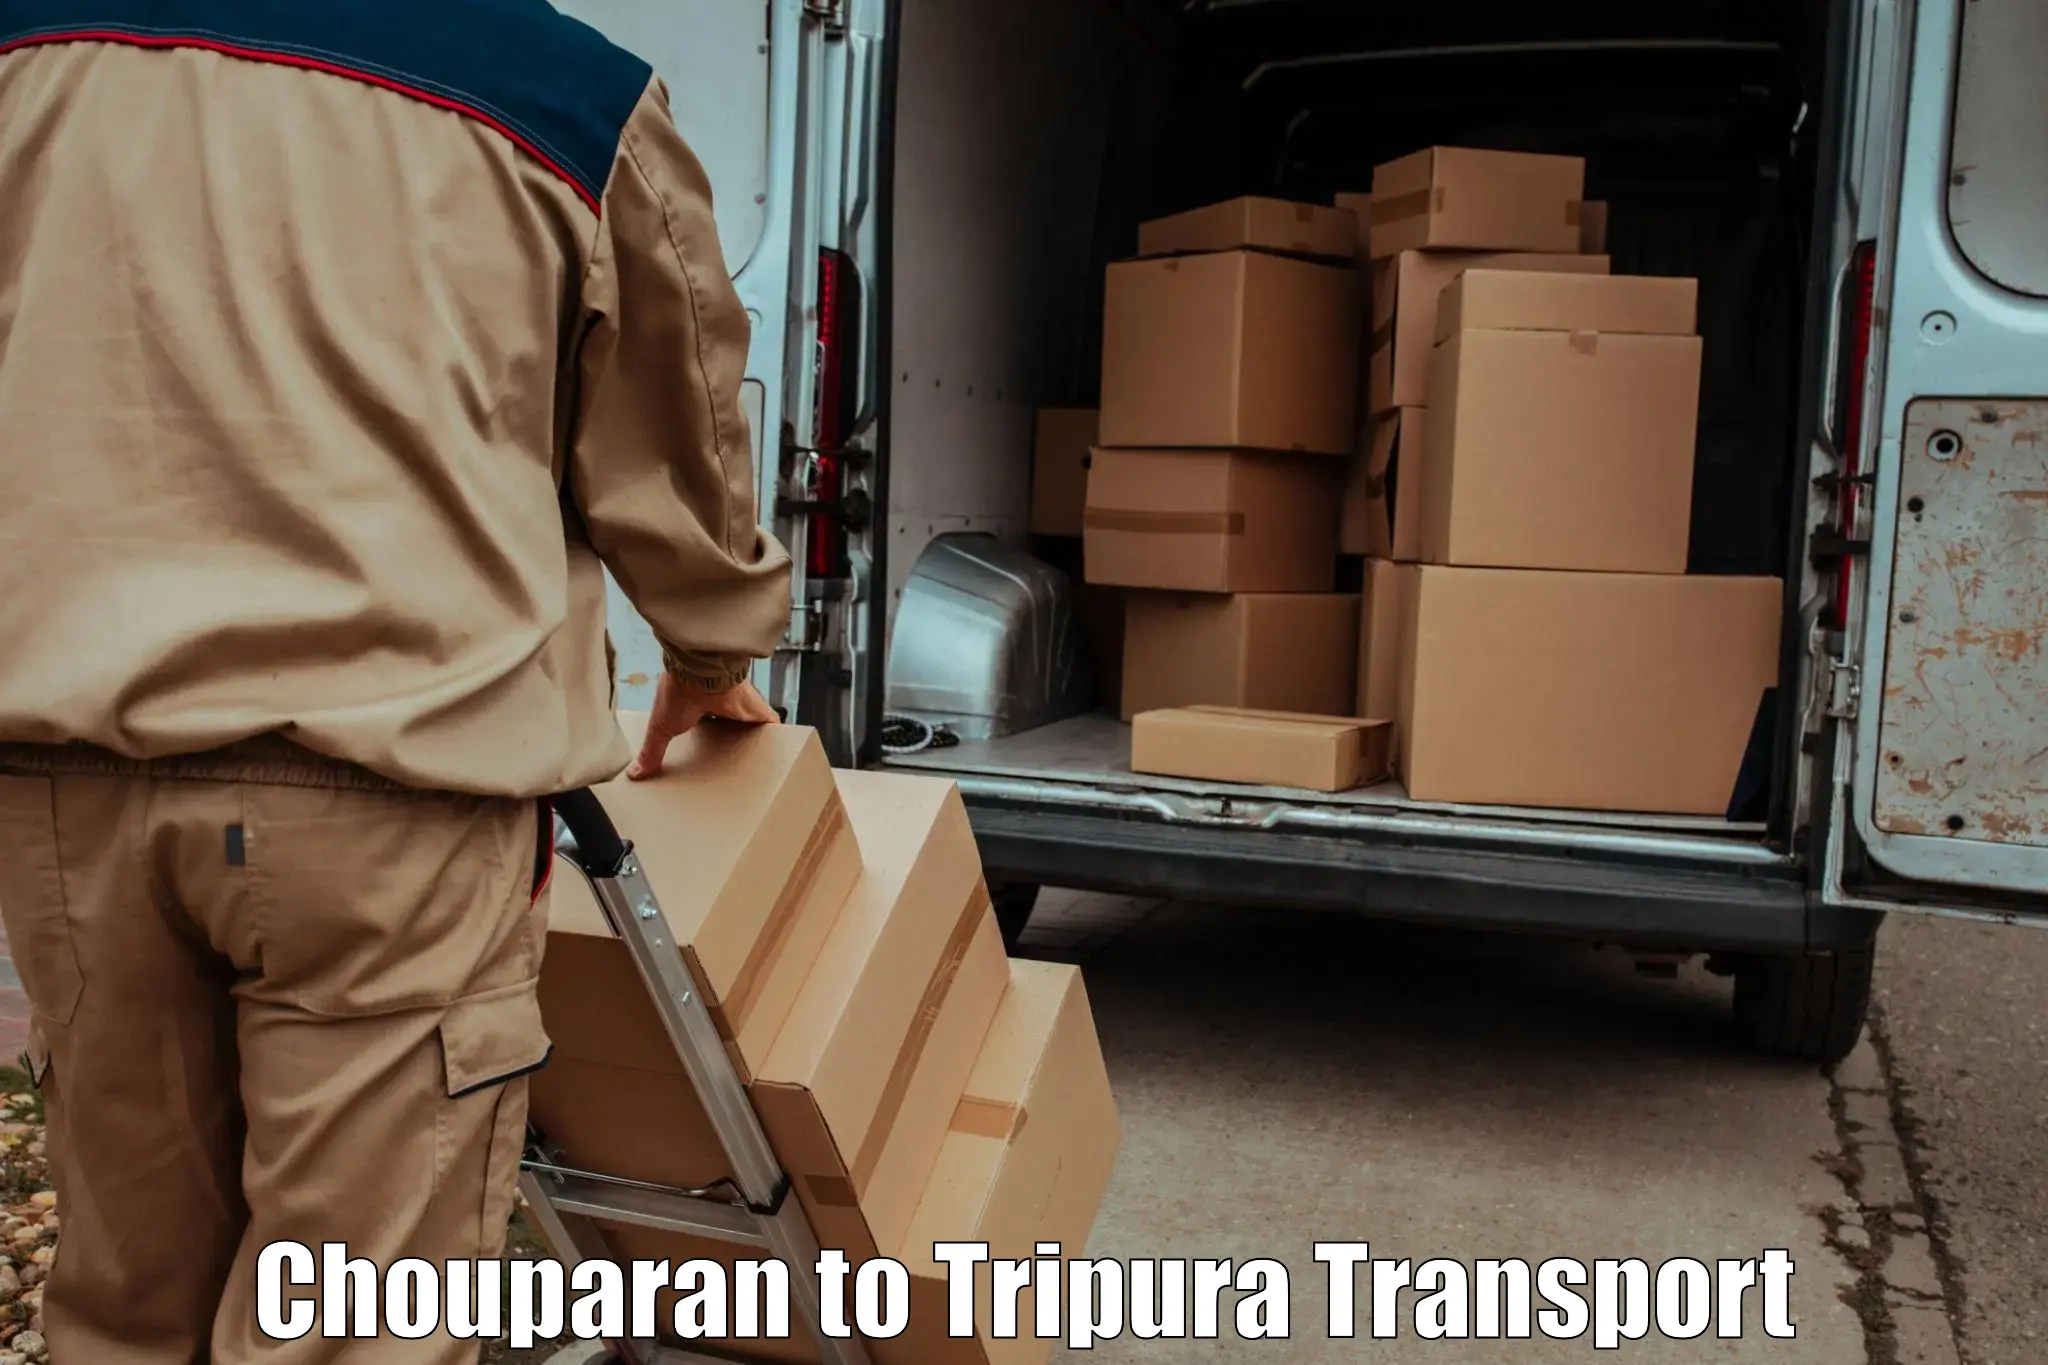 Pick up transport service Chouparan to Manu Bazar